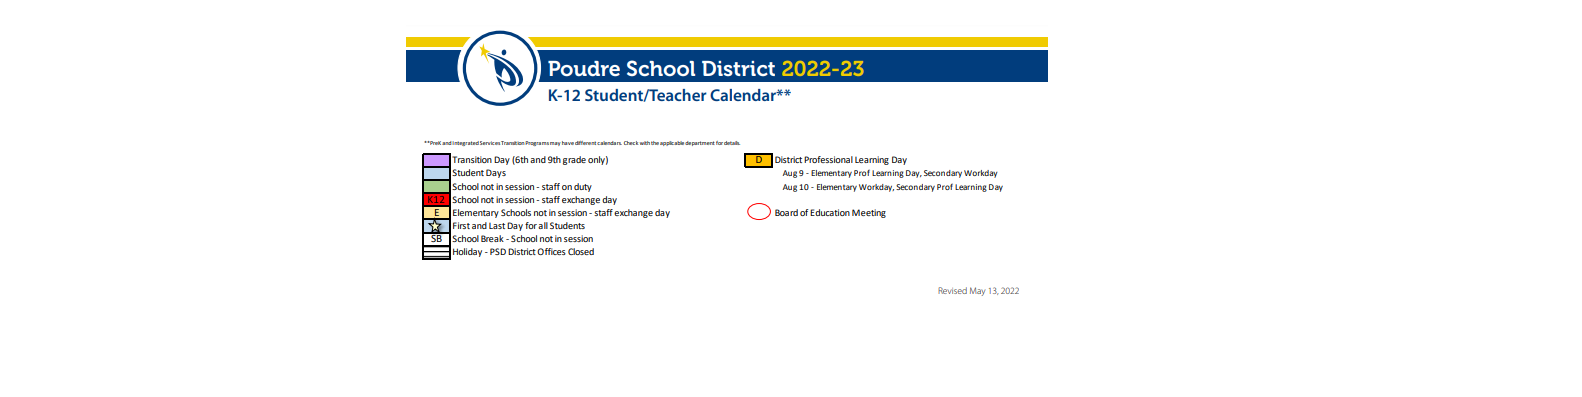 District School Academic Calendar Key for O'dea Elementary School